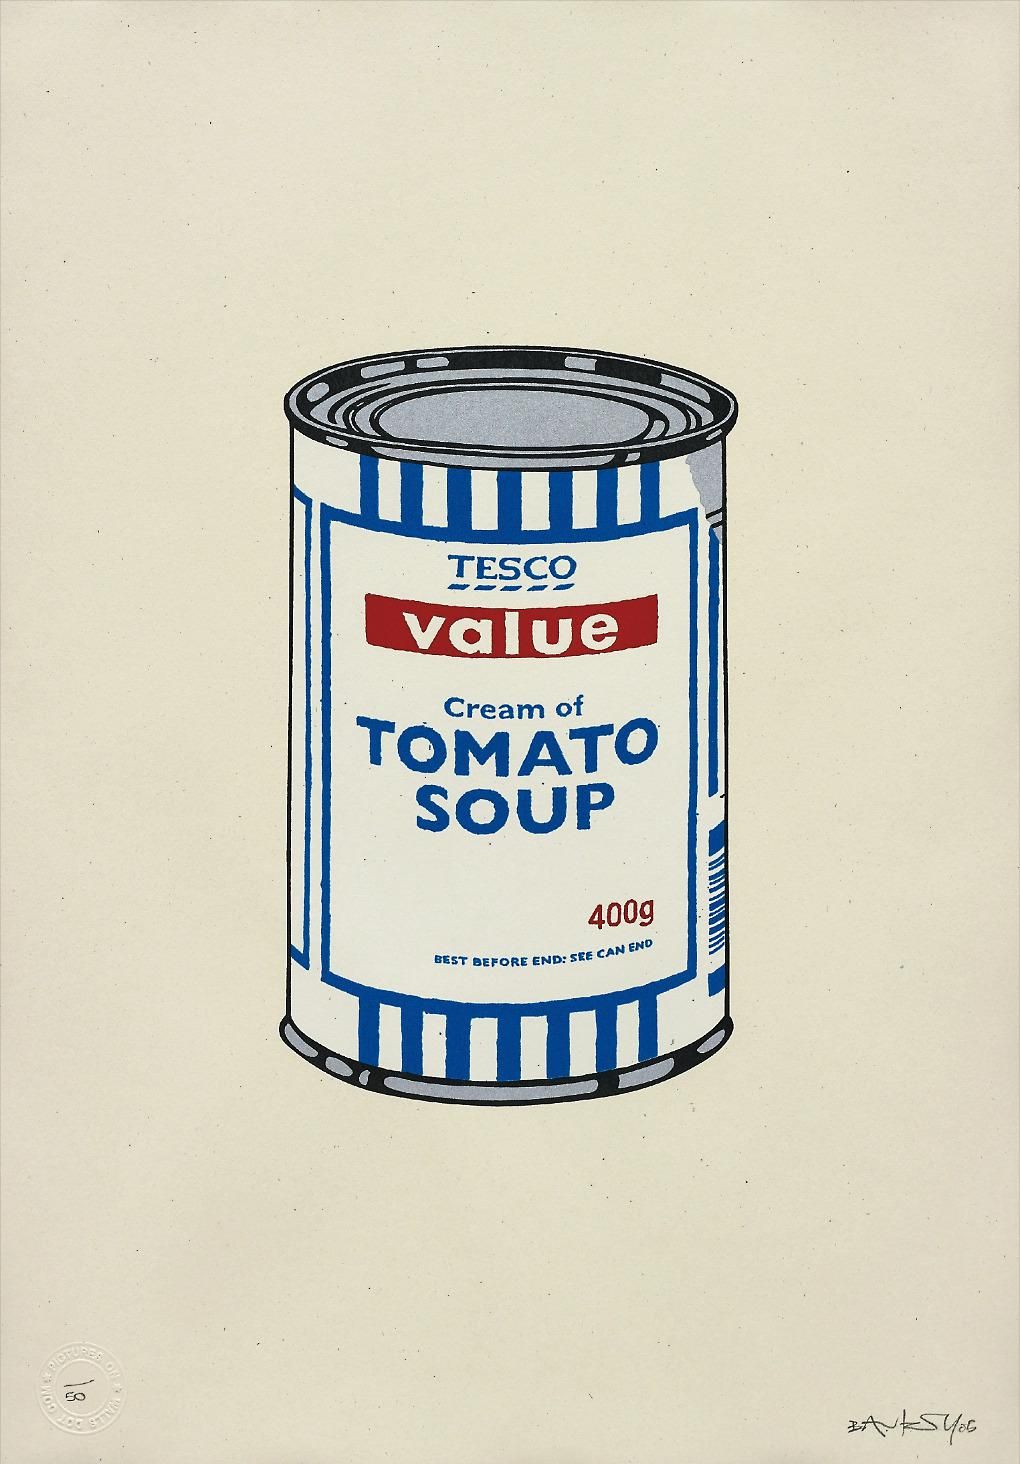 即納最新品BANKSYバンクシー「 Tesco Value Tomato Soup Cans」, 2006 ★バンクシー★POWの作品。本物保証★シートのみ出品★AGYO Gallery提供 石版画、リトグラフ